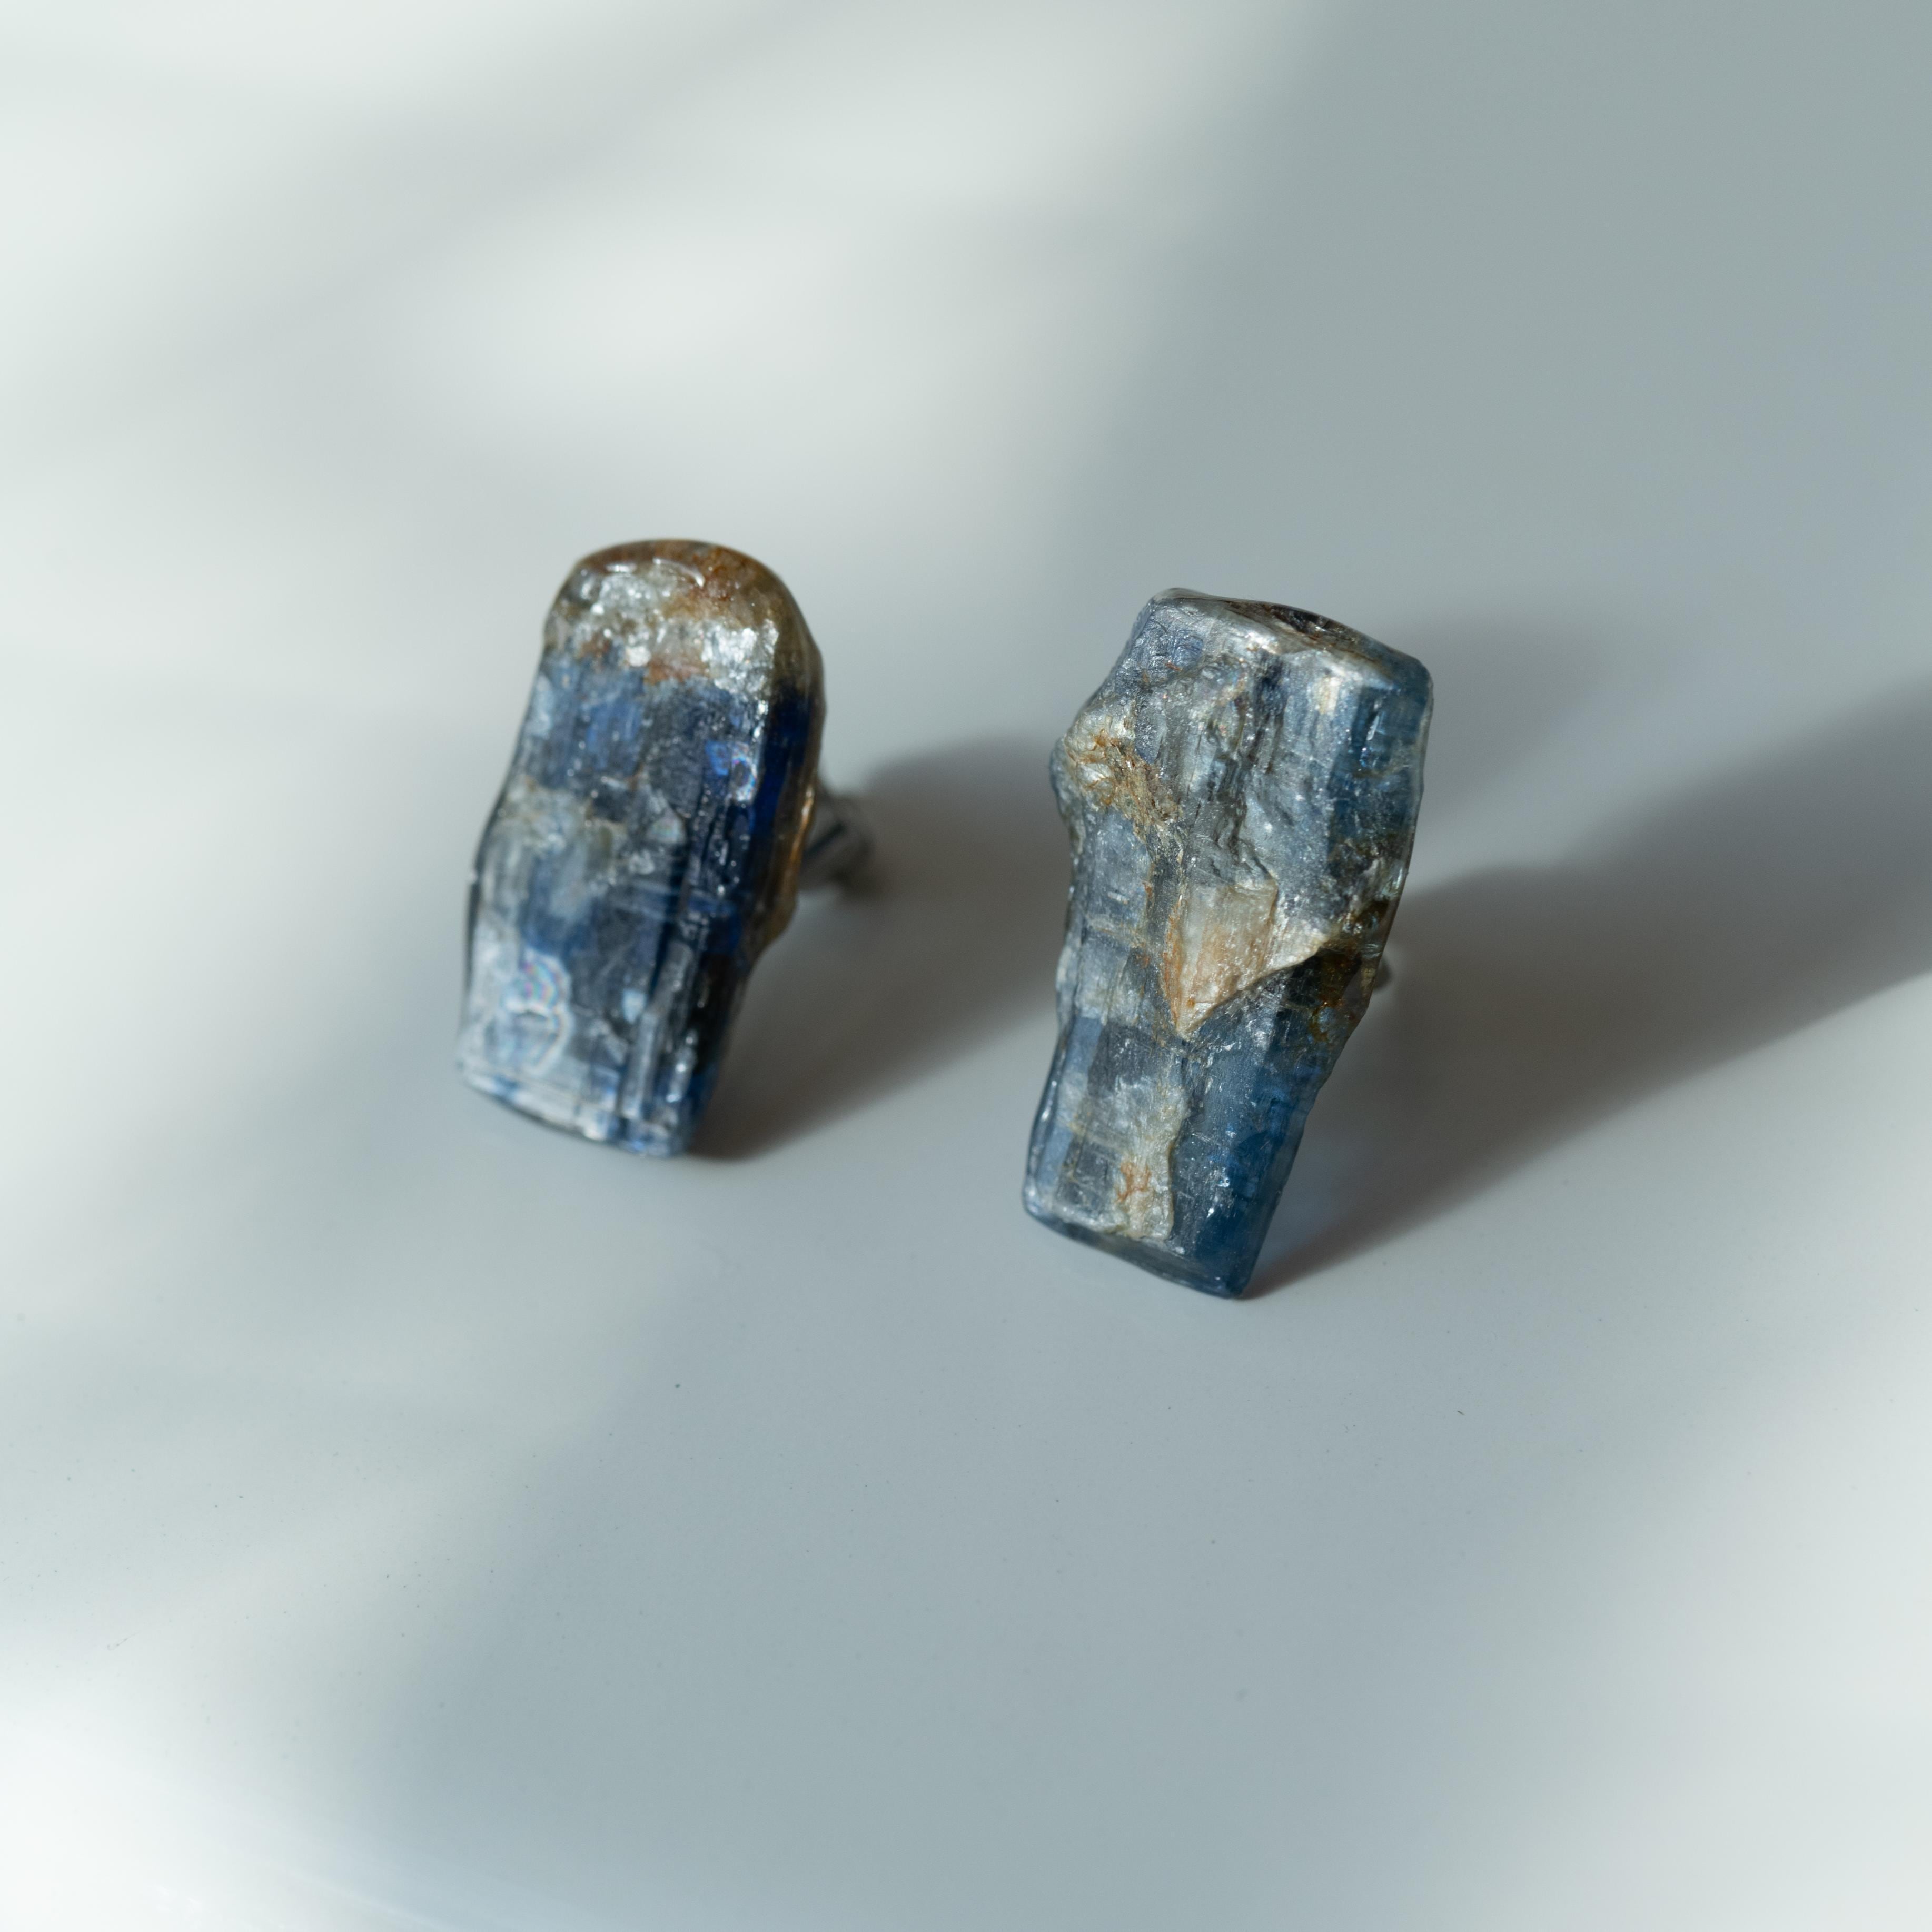 カイヤナイト 原石ピアス / イヤリング アレルギー対応 天然石 鉱物